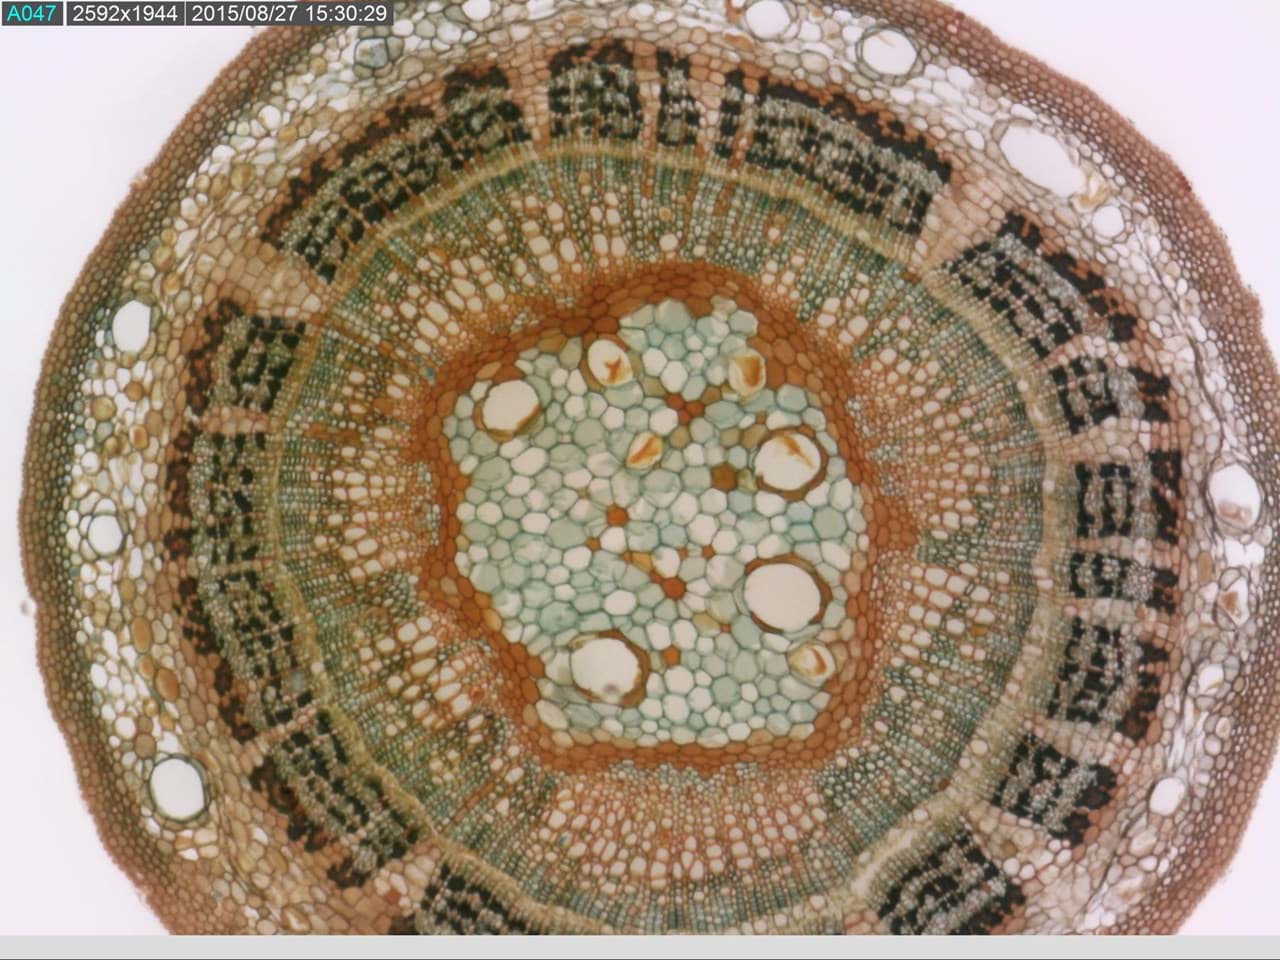 Foto von Zellen unter dem Mikroskop. Ein Beispiel von dem was man mit einem Dino-Lite Mikroskop machen kann.